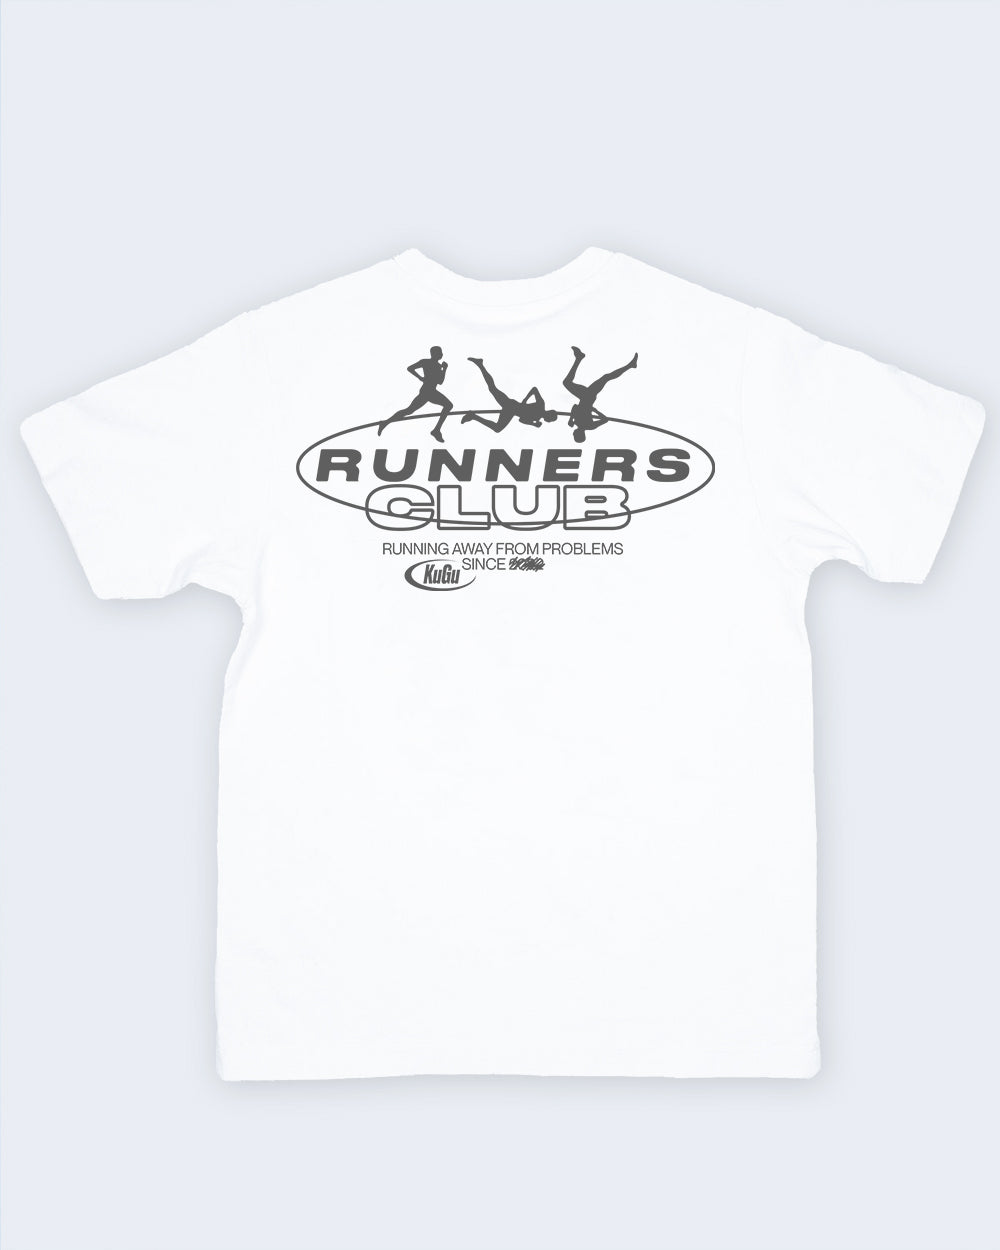 RUNNERS CLUB Shirt by KUGU Studio